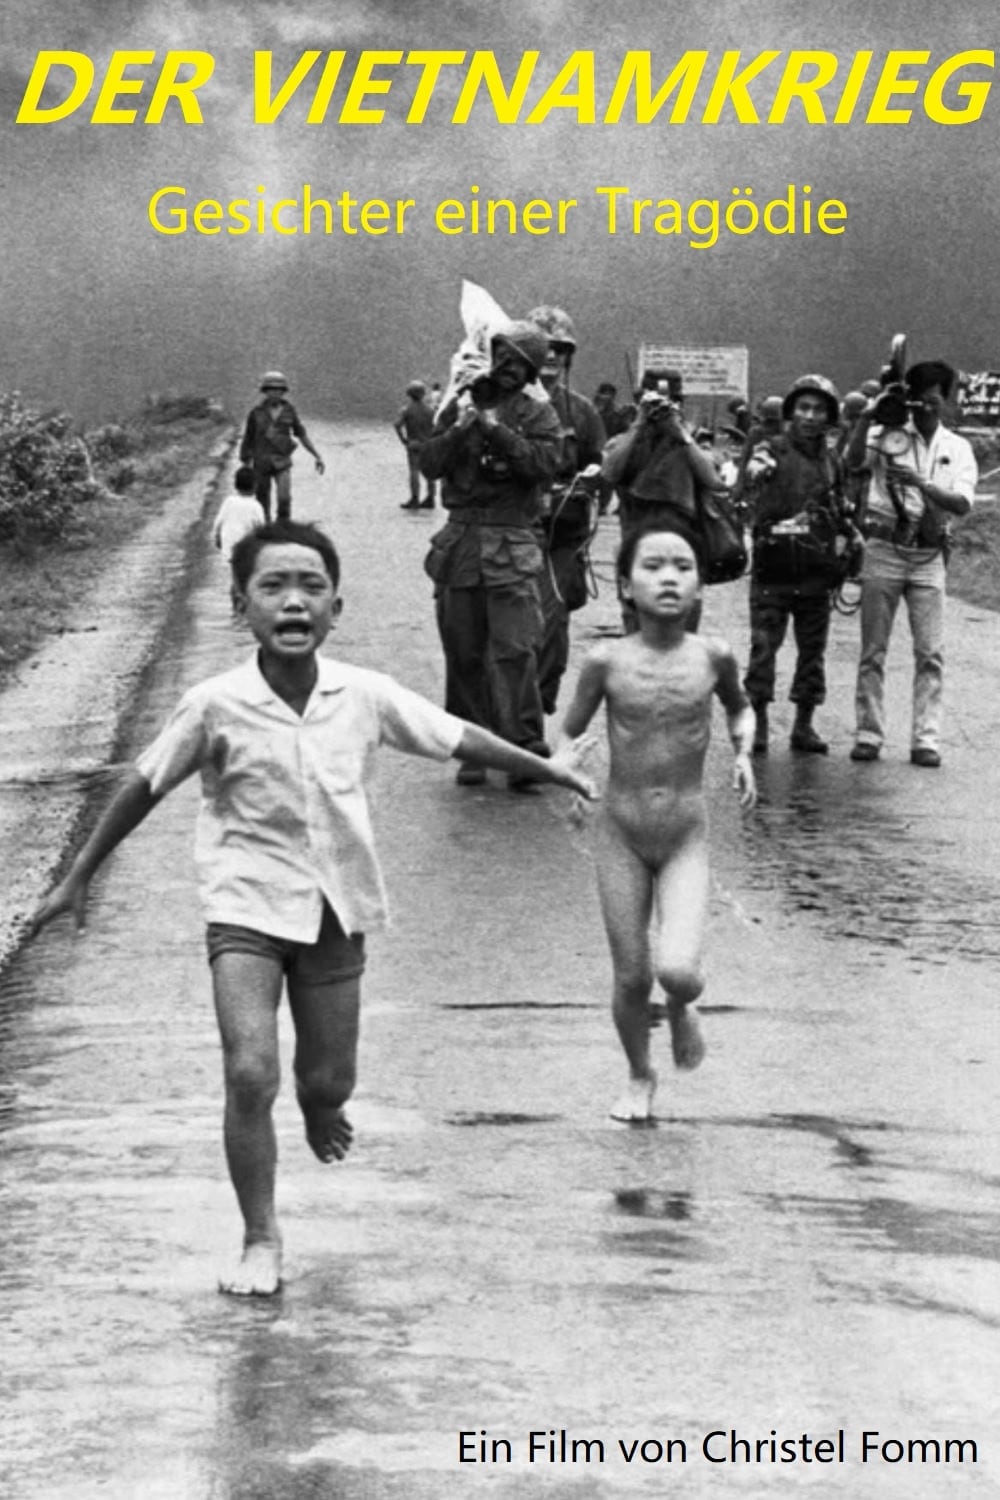 Der Vietnamkrieg - Gesichter einer Tragödie